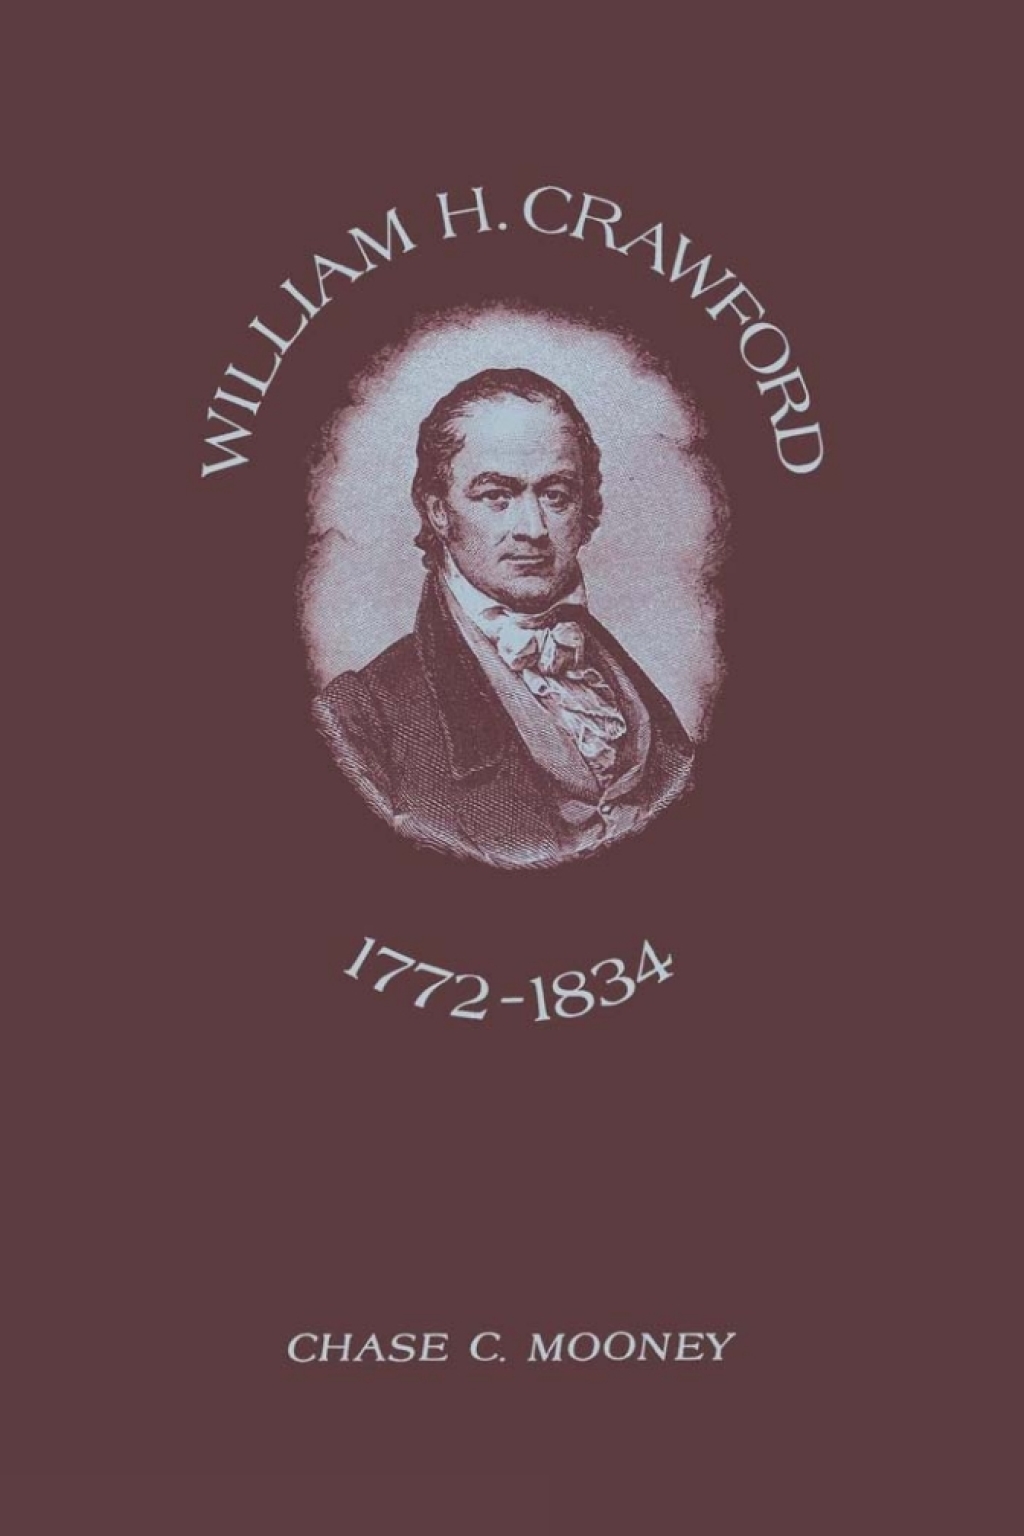 William H. Crawford (eBook) - Chase C. Mooney,